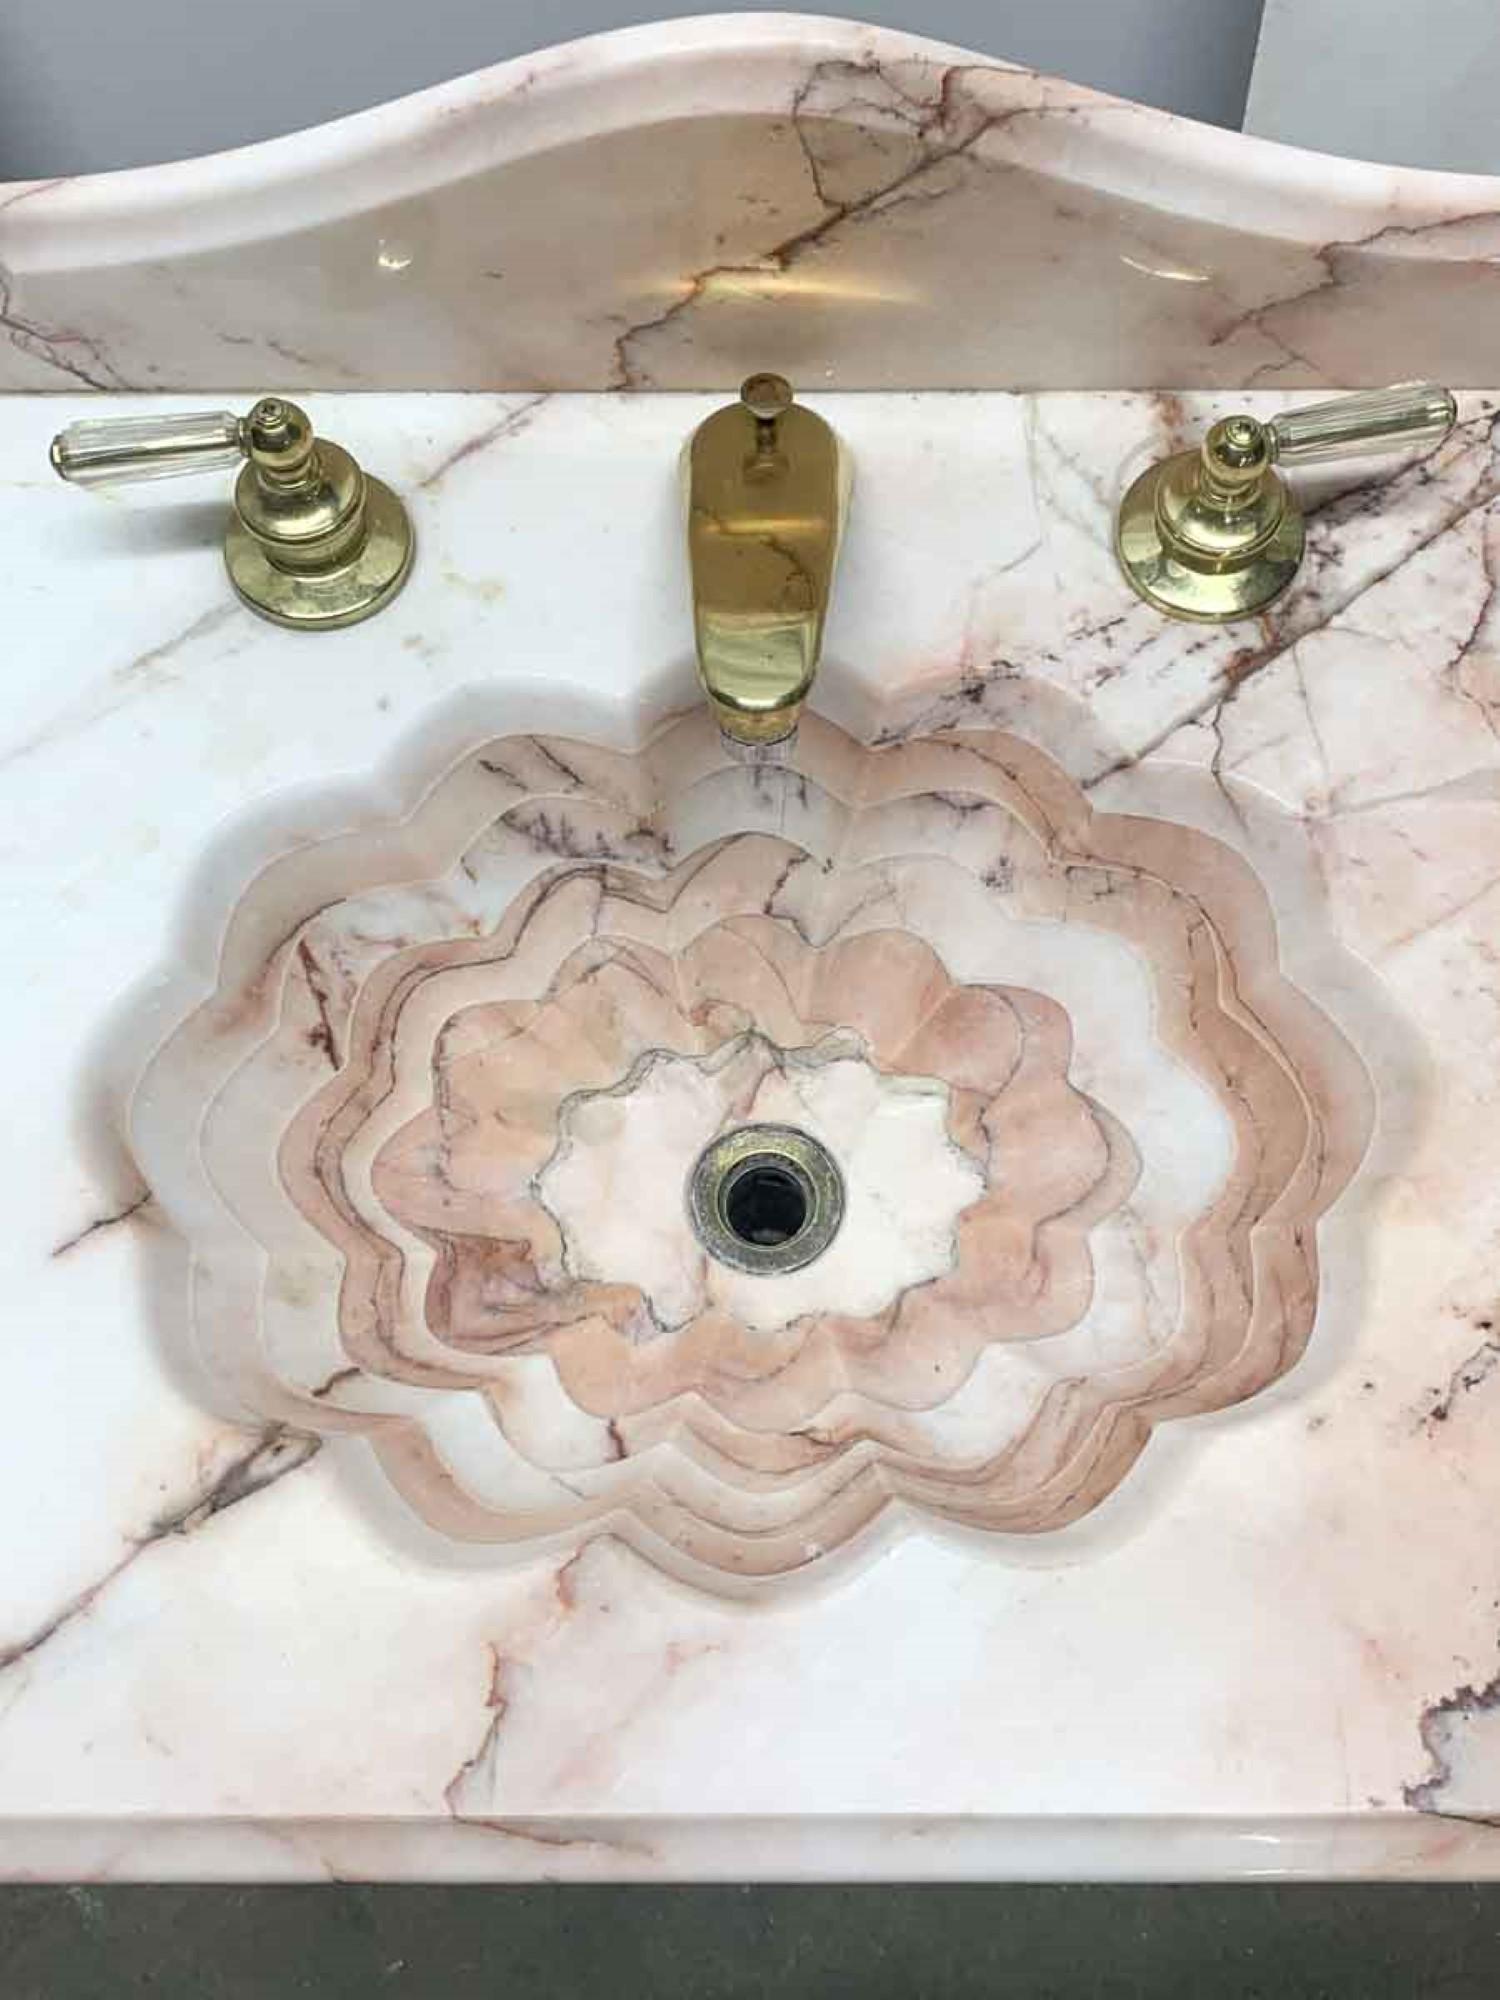 pedestal sink with backsplash